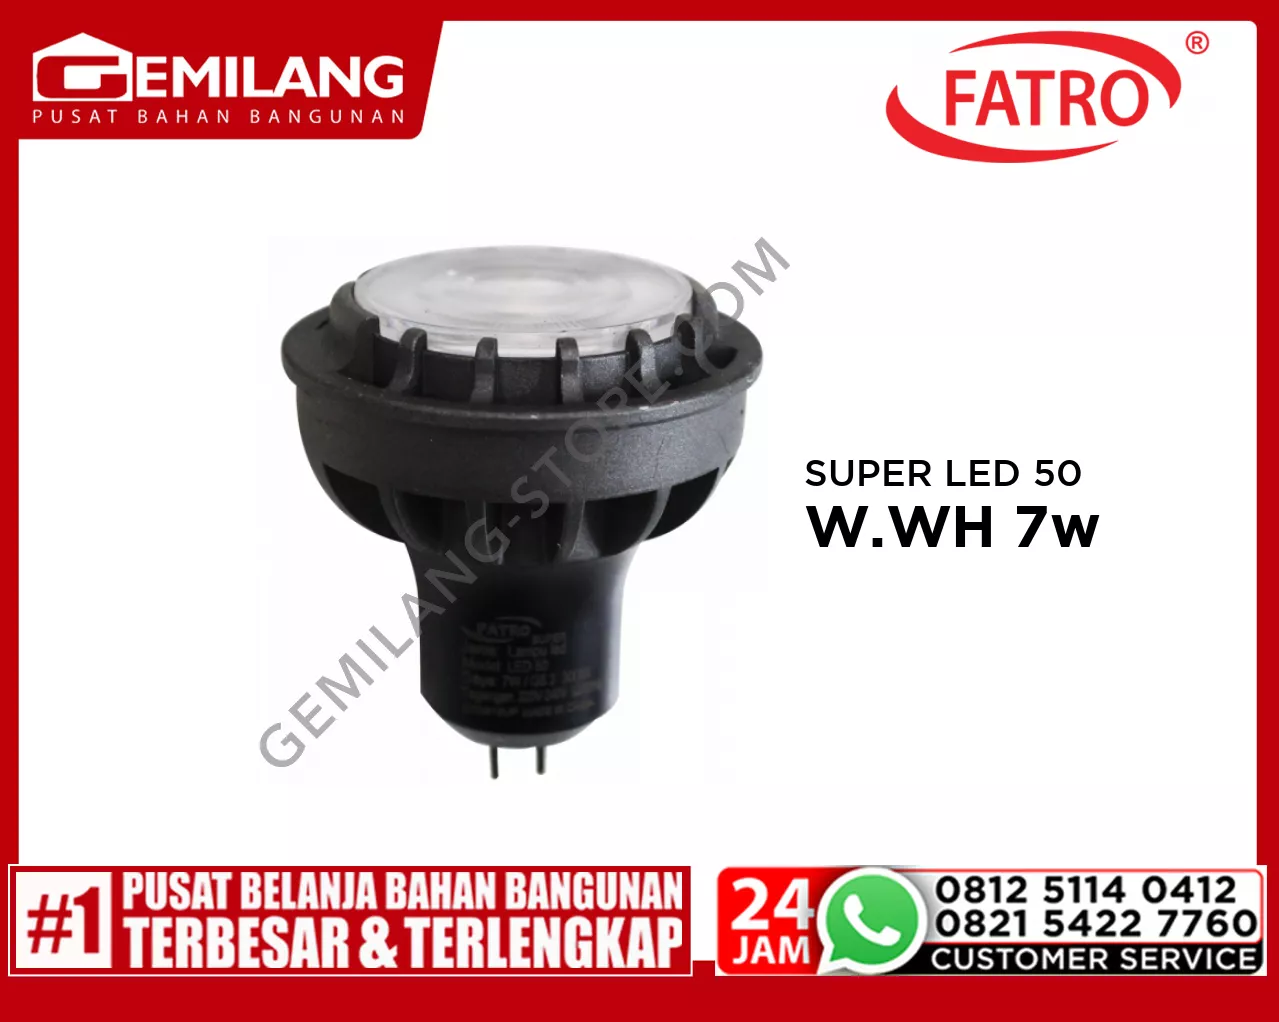 FATRO SUPER LED 50 MR16 220v W.WH 7w